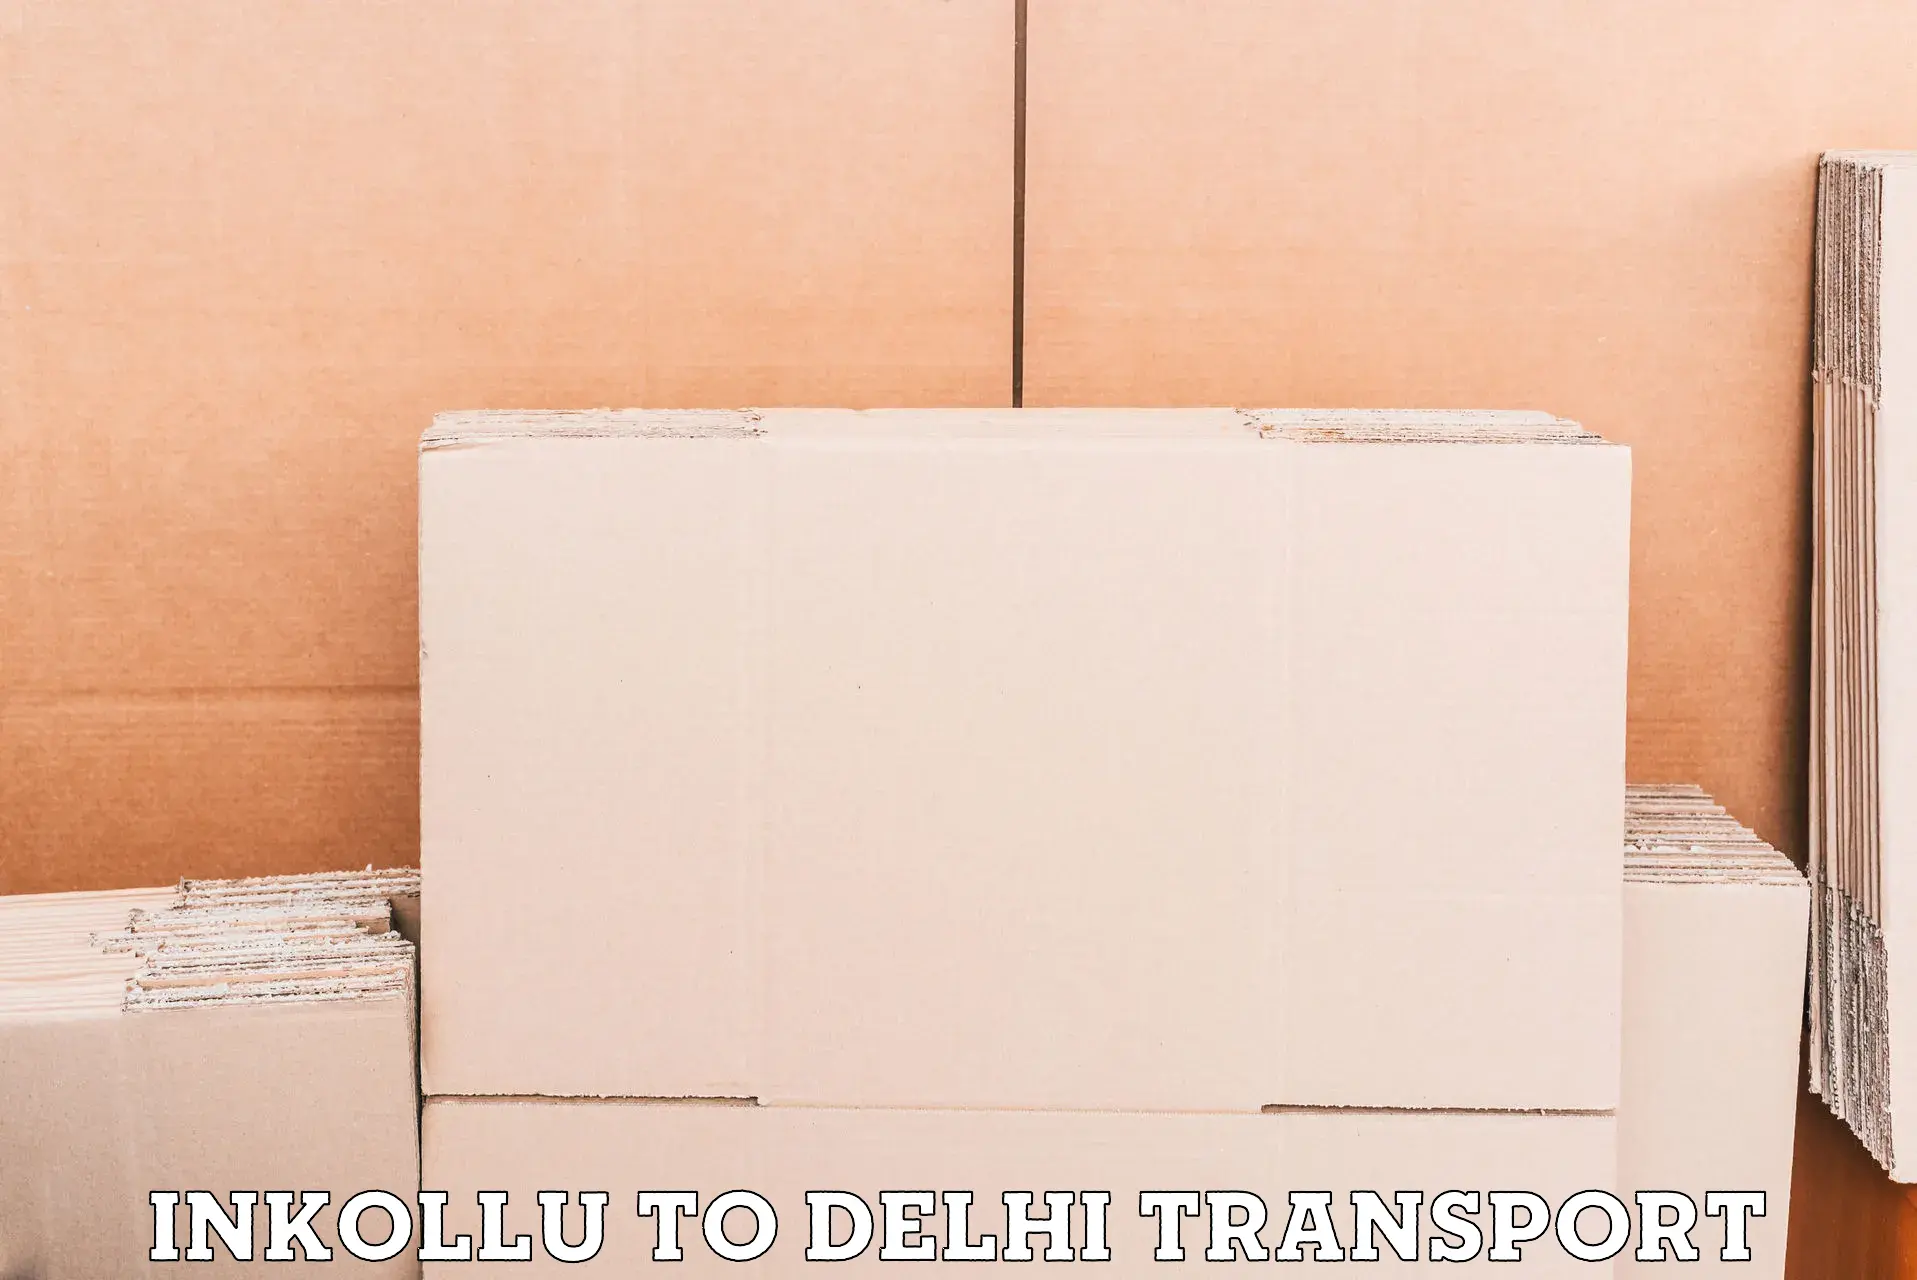 Commercial transport service in Inkollu to Kalkaji